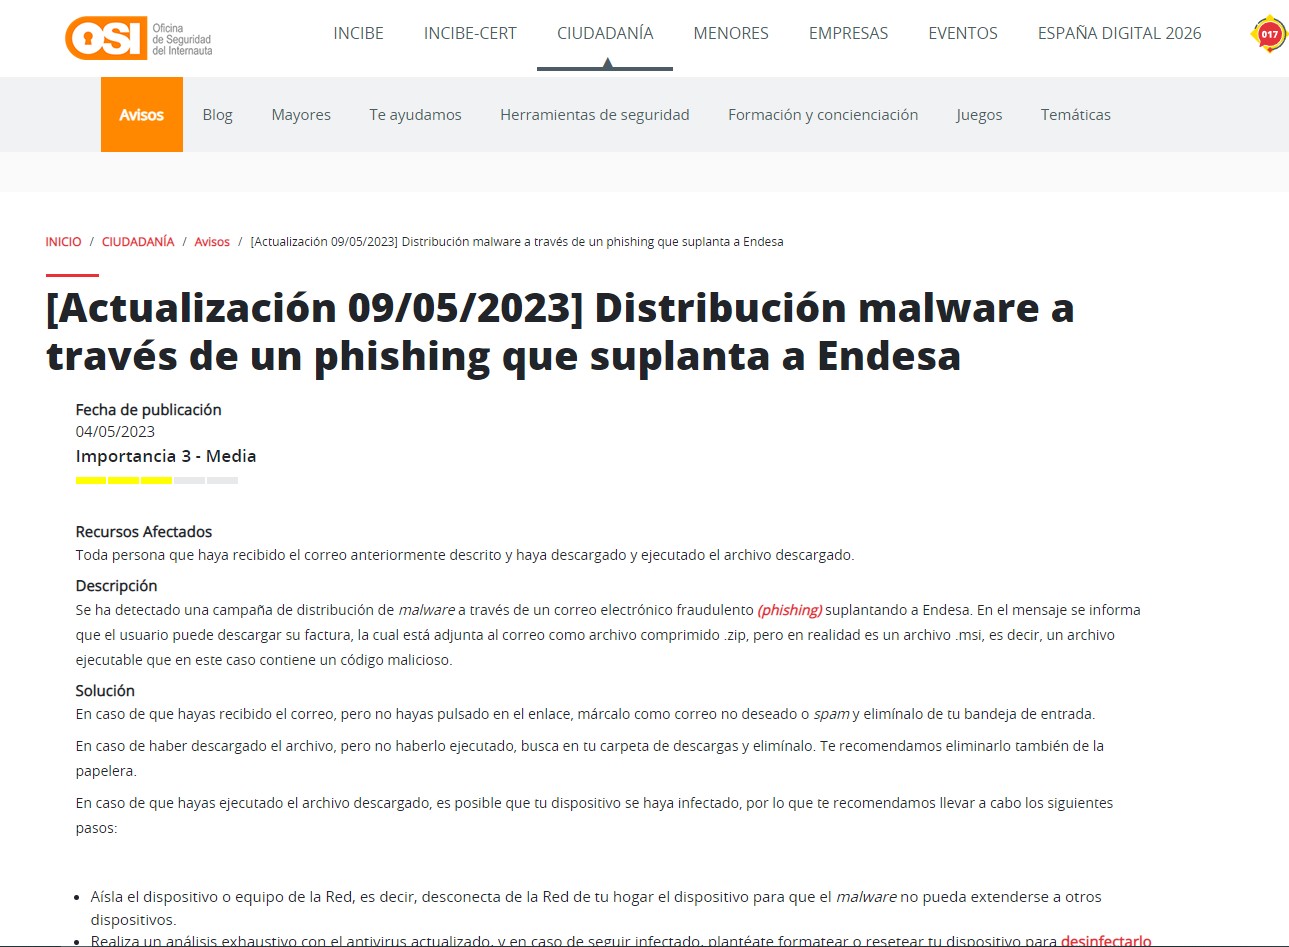 [Actualización 09/05/2023] Distribución malware a través de un phishing que suplanta a Endesa